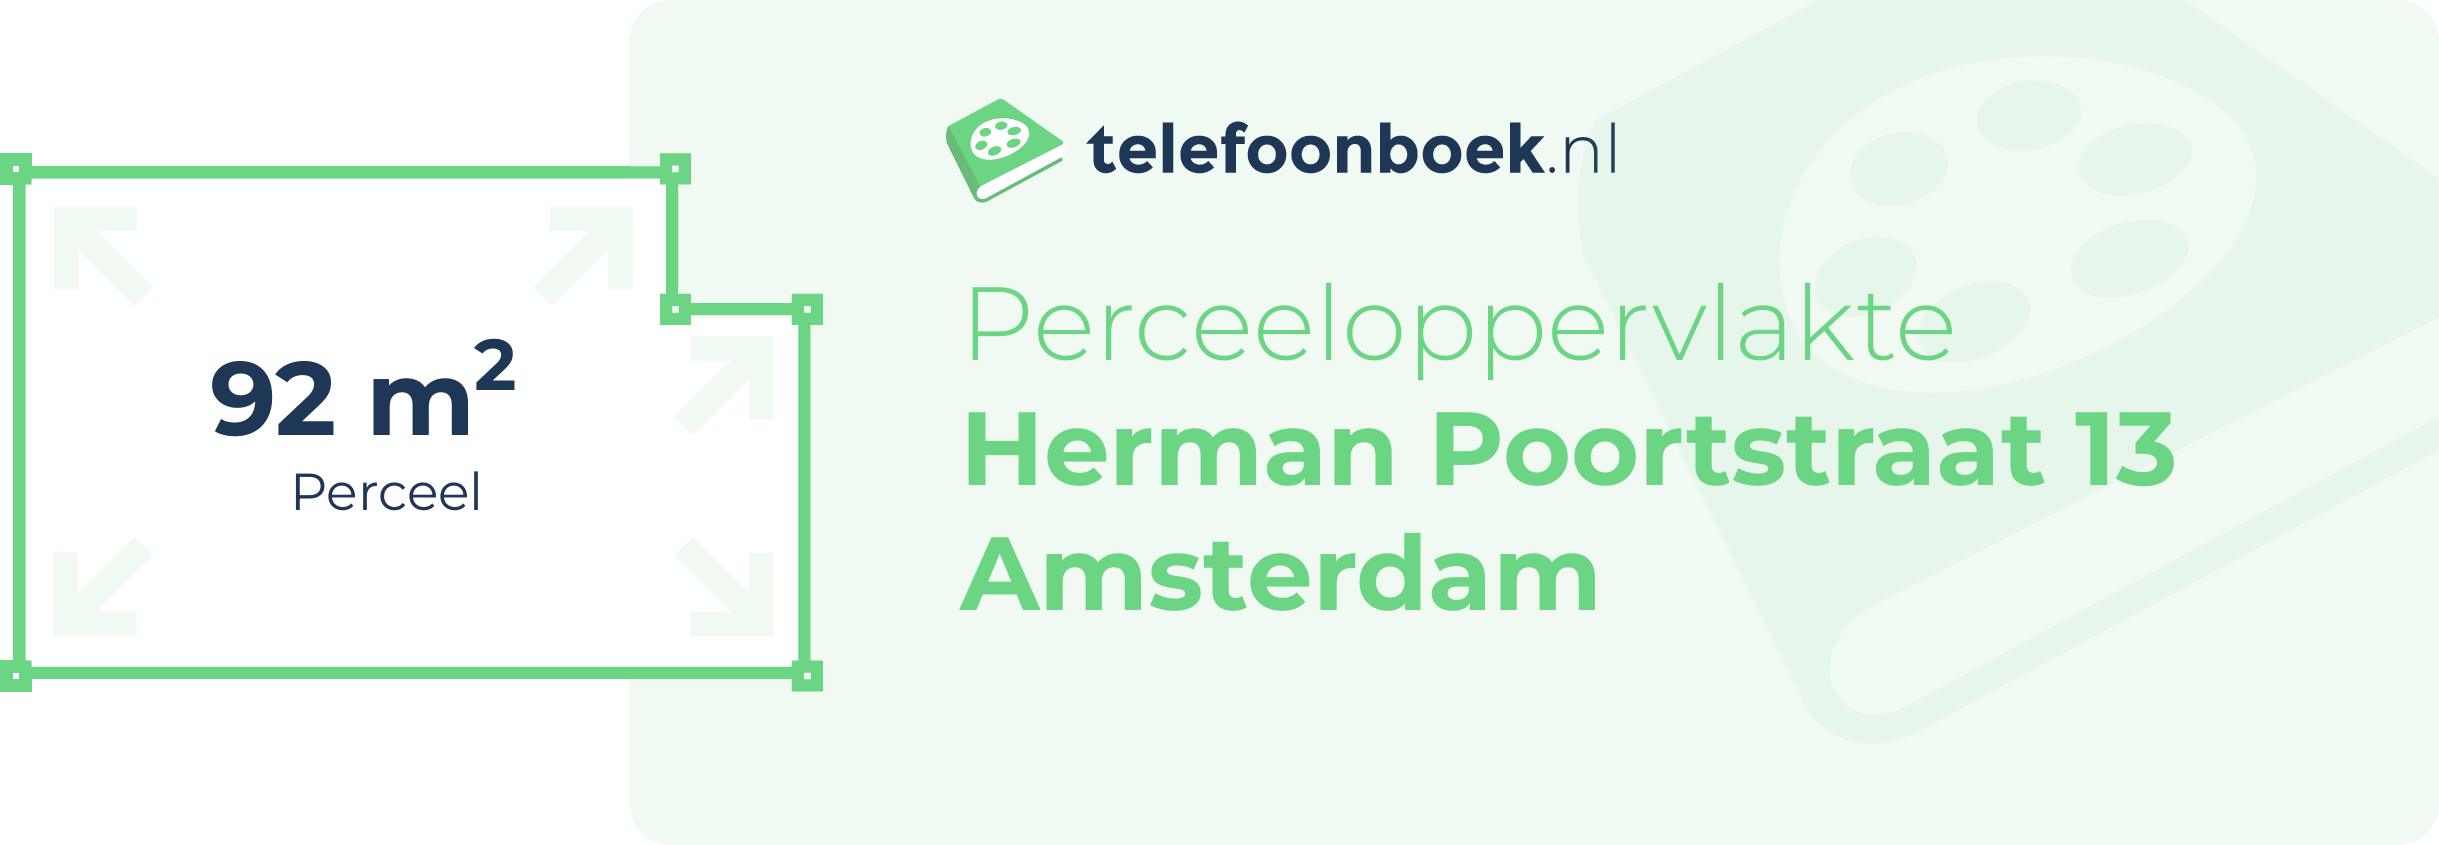 Perceeloppervlakte Herman Poortstraat 13 Amsterdam